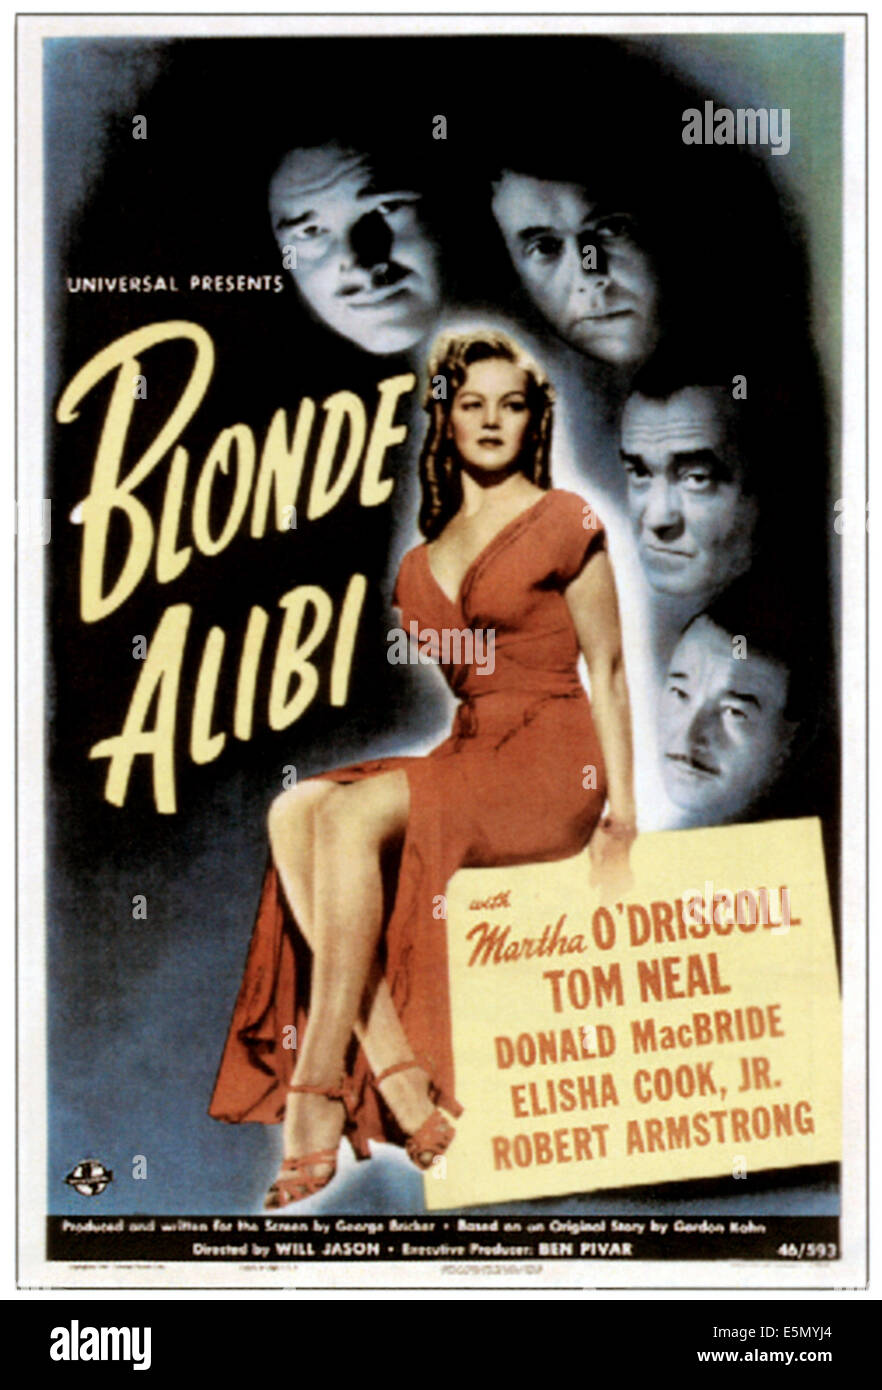 BLONDE ALIBI, center: Martha O'Driscoll, 1946. Stock Photo